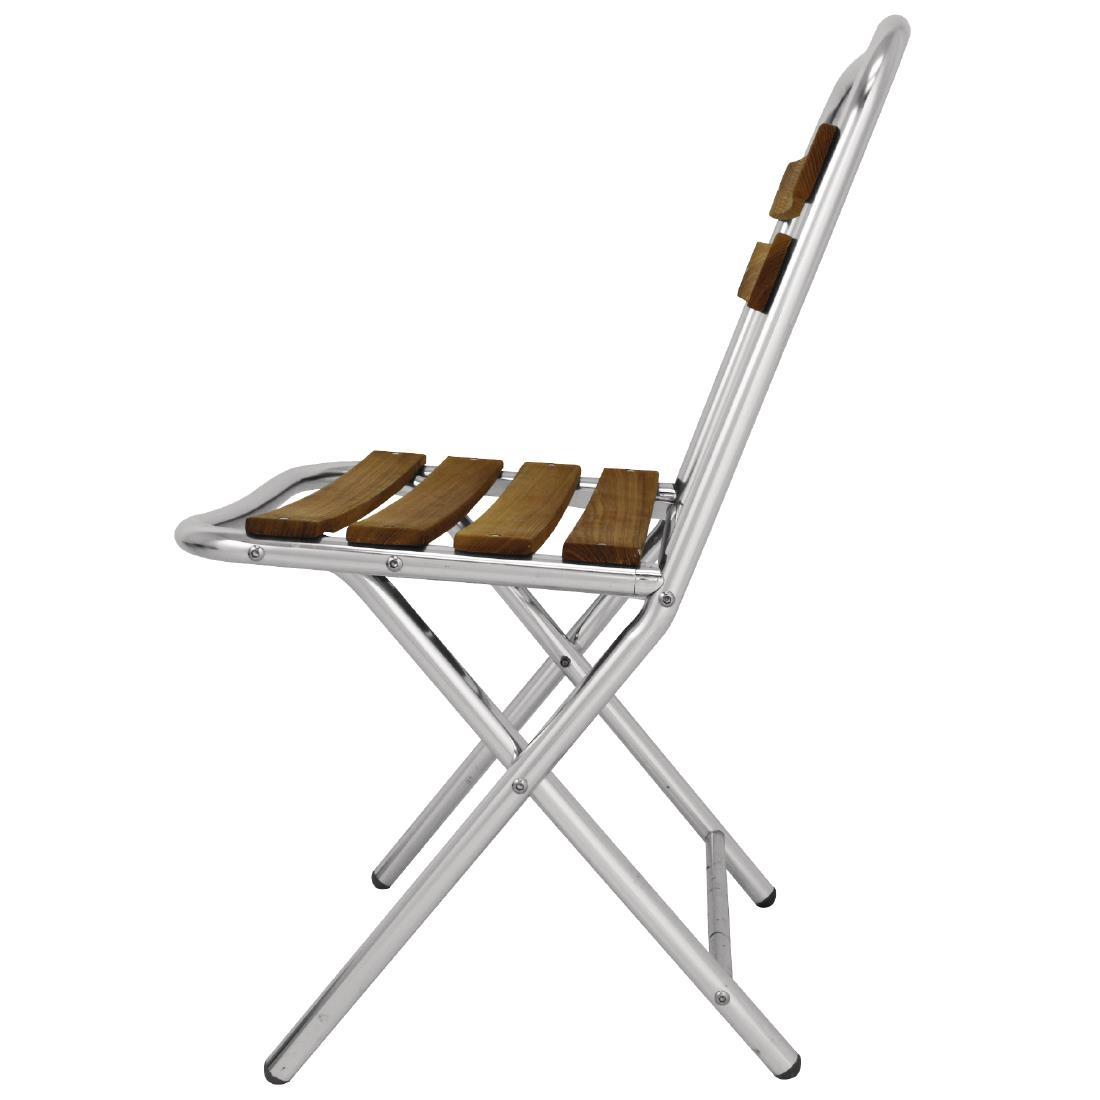 Bolero Ash and Aluminium Folding Chairs (Pack of 4) - GL980  - 3